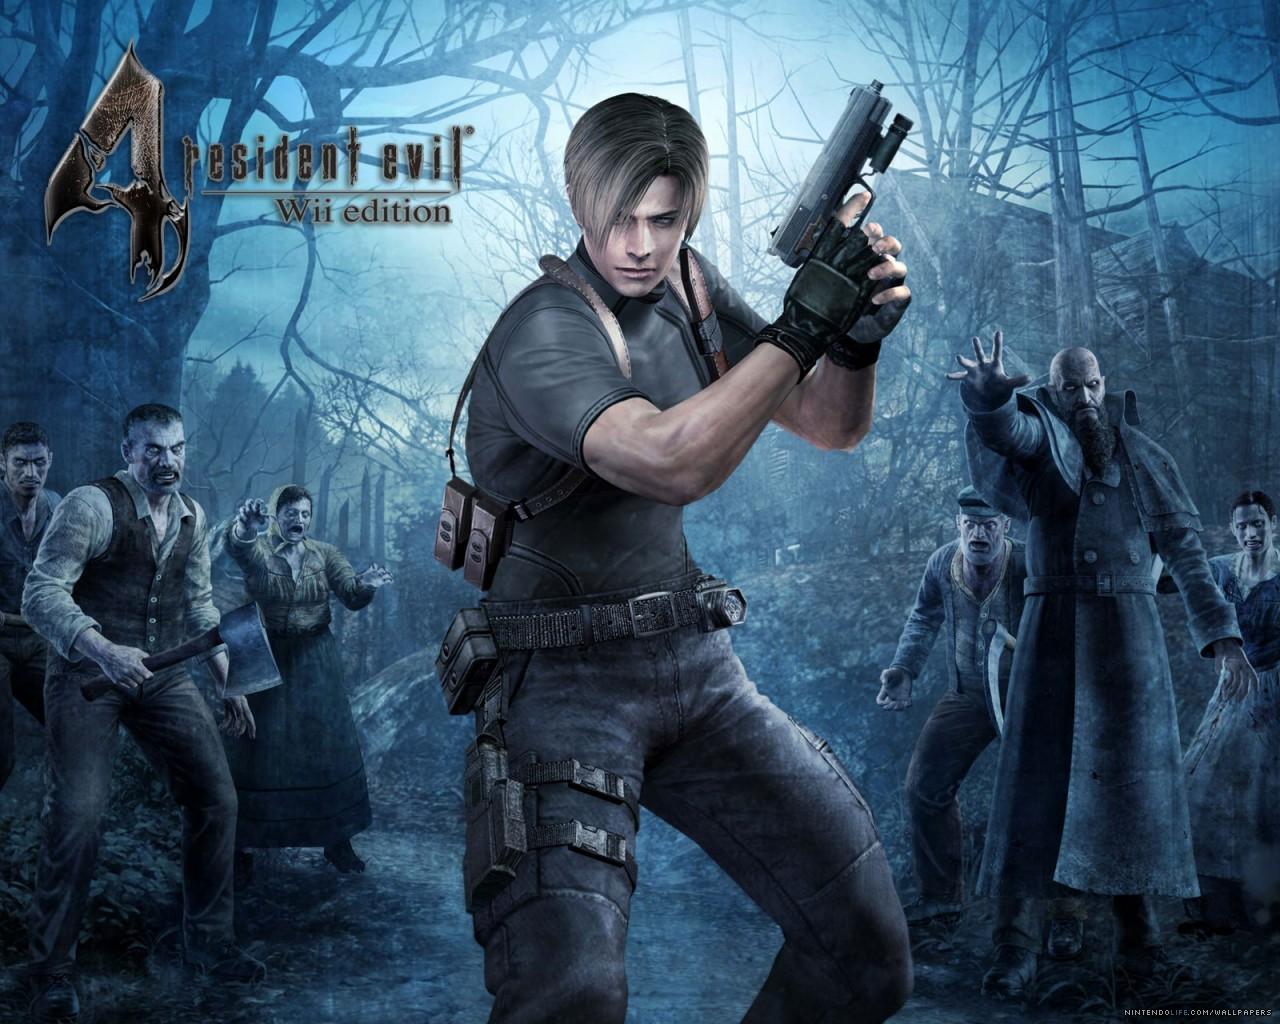 1280 x 1024 · jpeg - Resident Evil 4 - Resident Evil Wallpaper (894834) - Fanpop